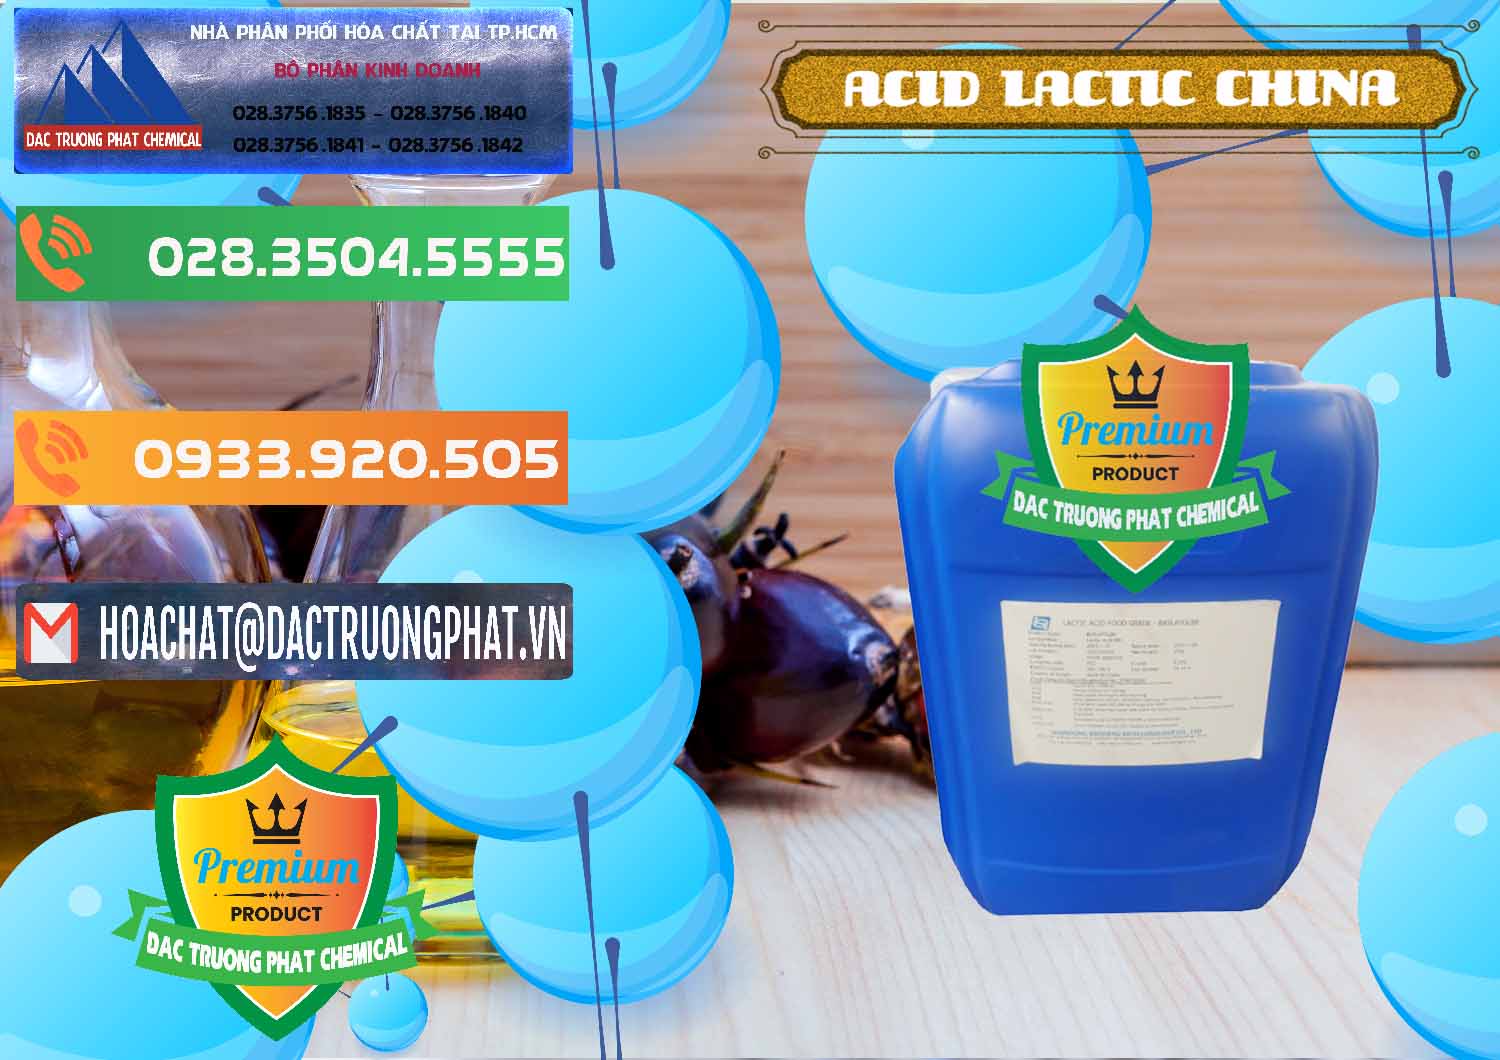 Chuyên bán - cung cấp Acid Lactic – Axit Lactic Trung Quốc China - 0374 - Cty bán - phân phối hóa chất tại TP.HCM - hoachatxulynuoc.com.vn